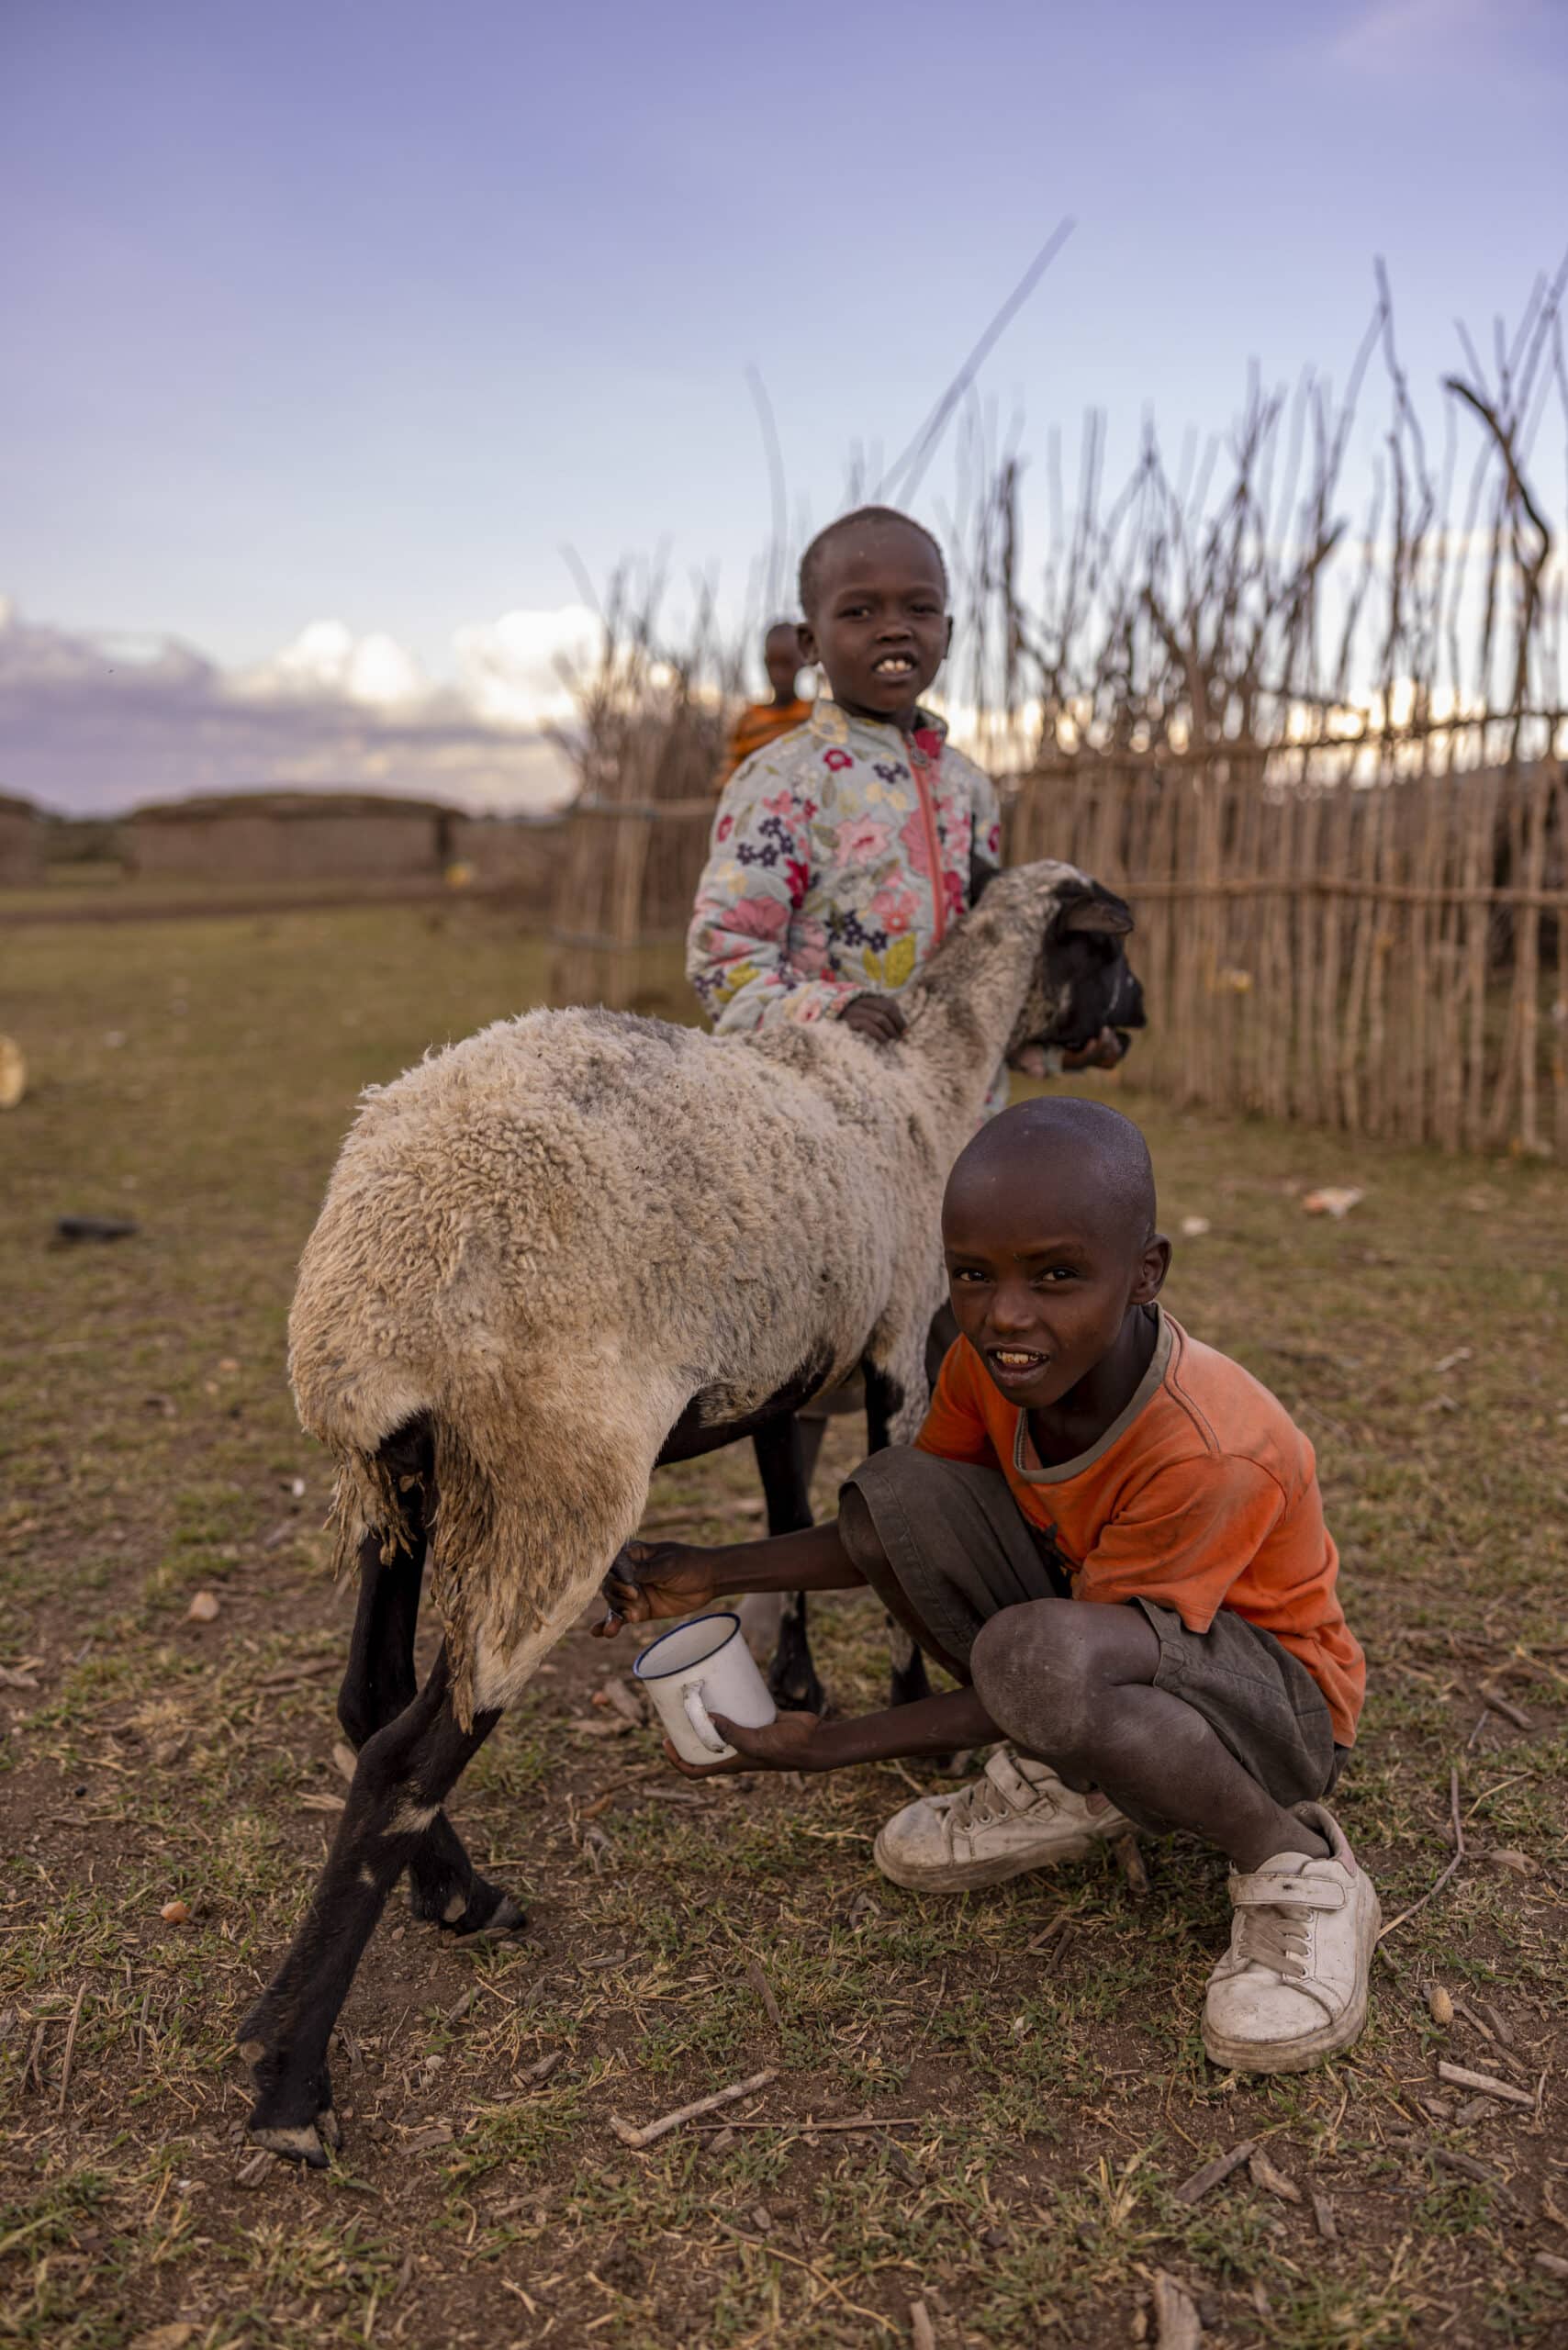 Zwei Kinder, eines stehend und eines kniend, interagieren mit einem Schaf in einer ländlichen Landschaft. Vor dem Hintergrund von Grasfeldern und spärlichen Zäunen wirken sie engagiert und glücklich. © Fotografie Tomas Rodriguez